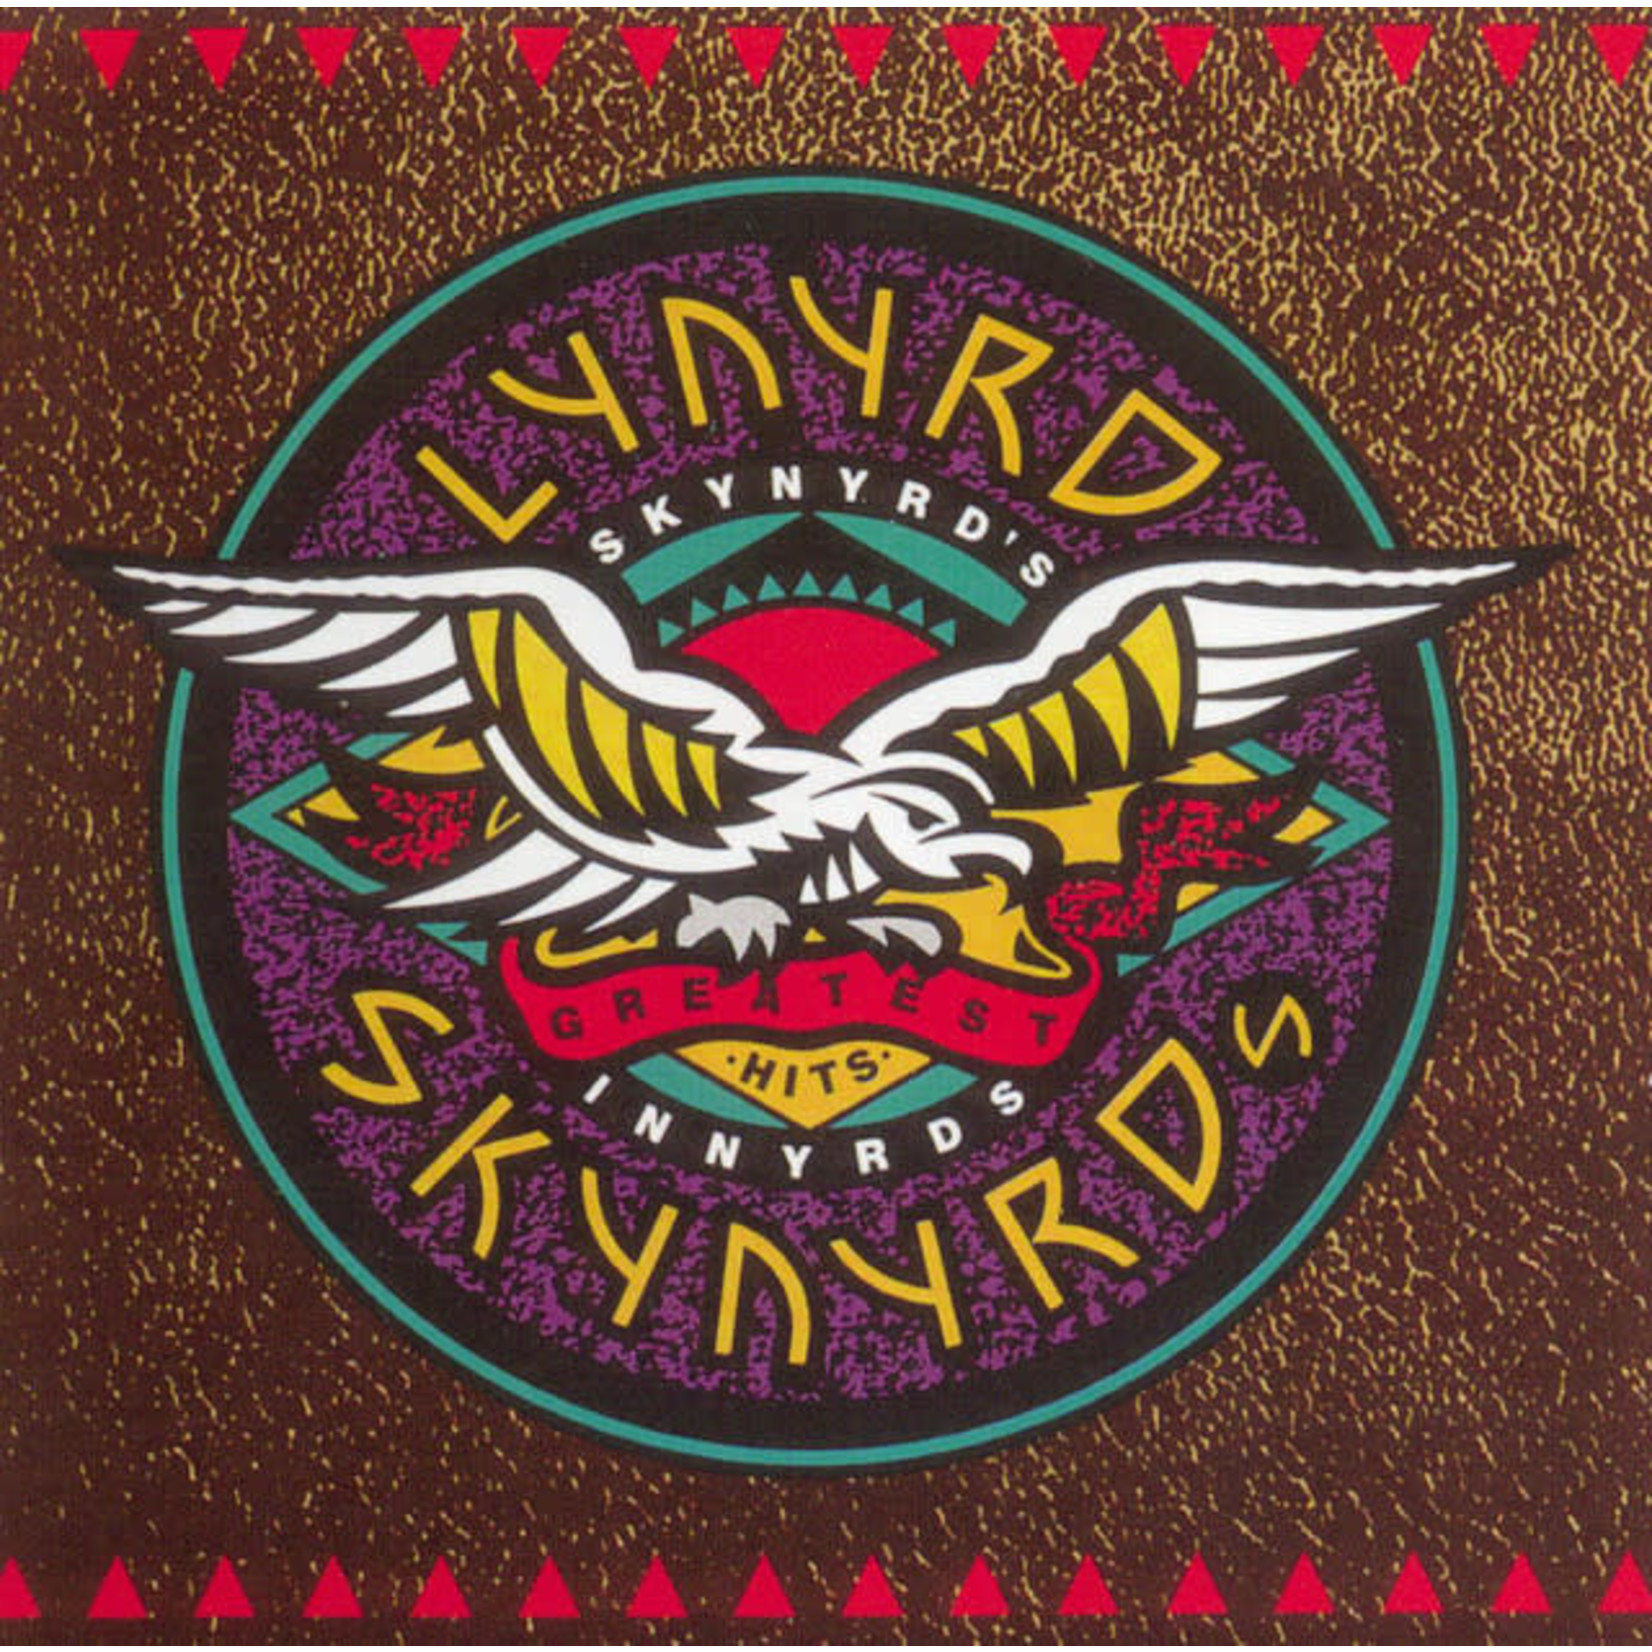 Vinyl Lynyrd Skynyrd - Skynyrd's Innyrds (Greatest Hits)